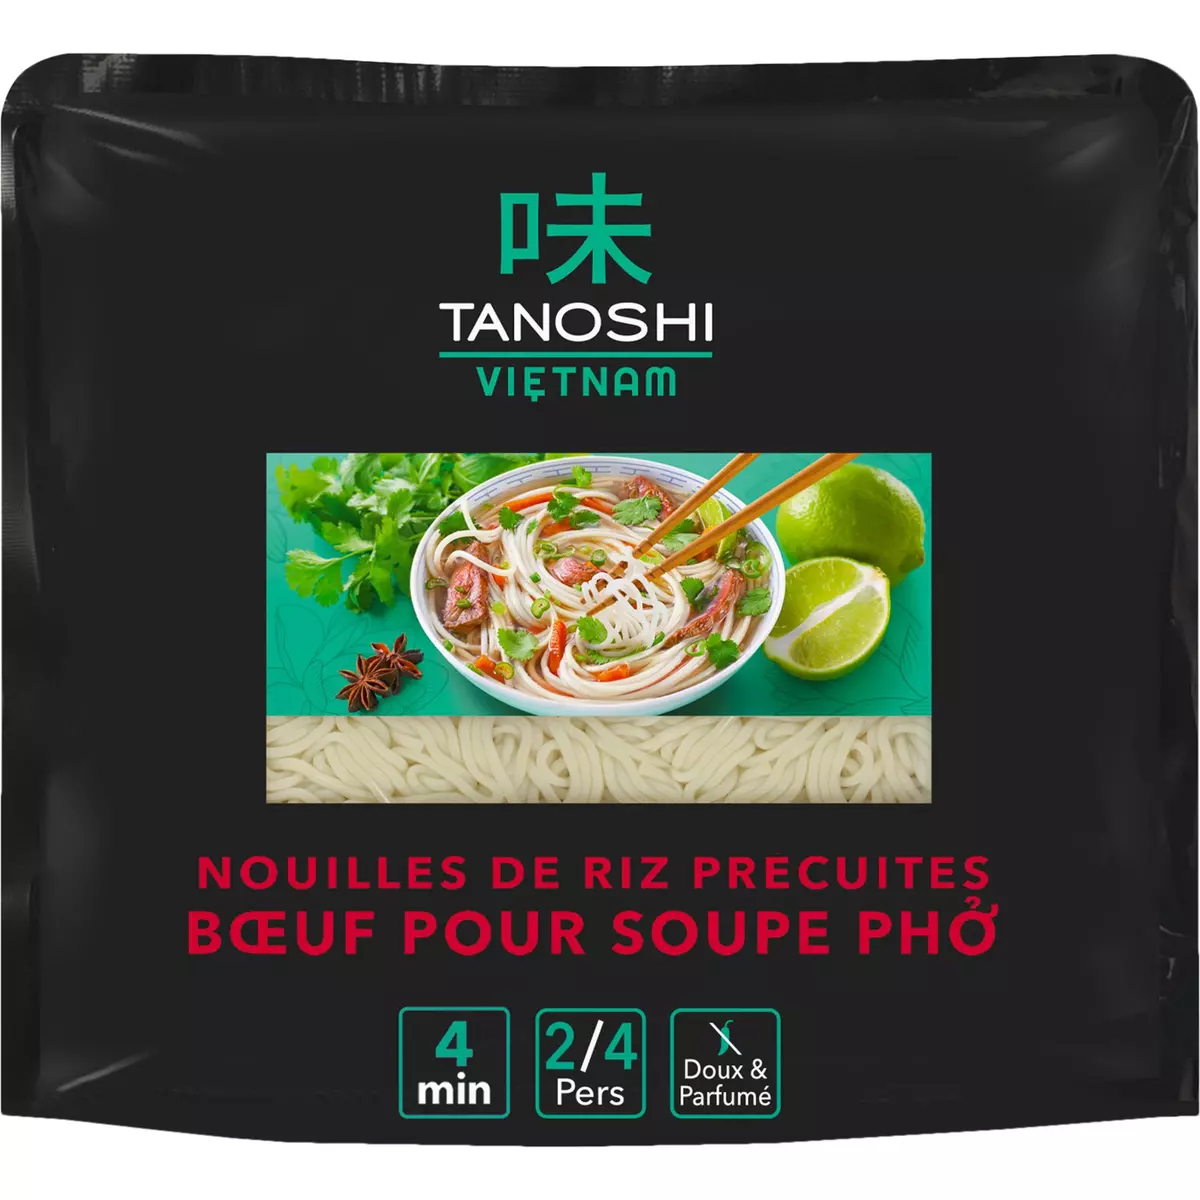 TANOSHI Nouilles de riz précuites saveur pho boeuf 2/4 personnes 380g